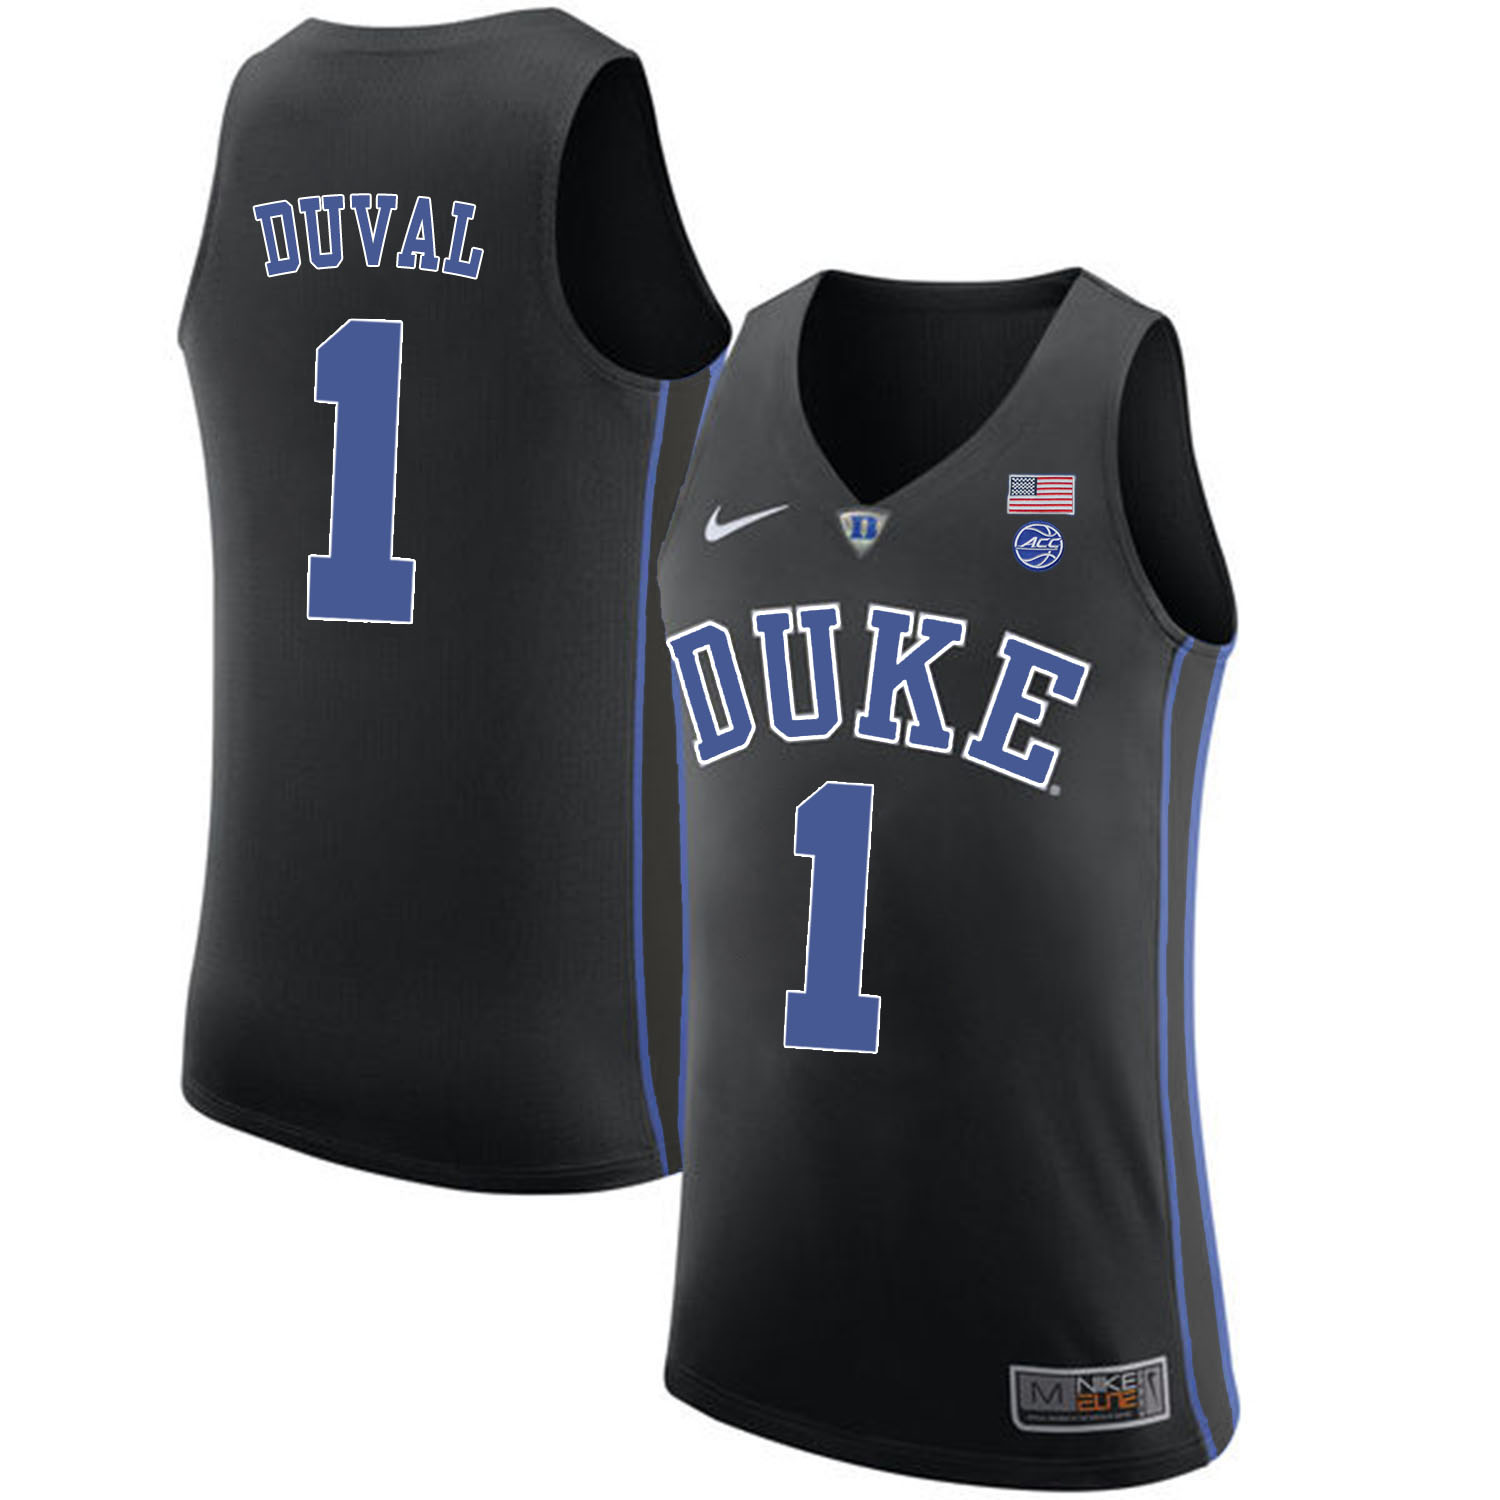 Duke Blue Devils 1 Trevon Duval Black Nike College Basketball Jersey